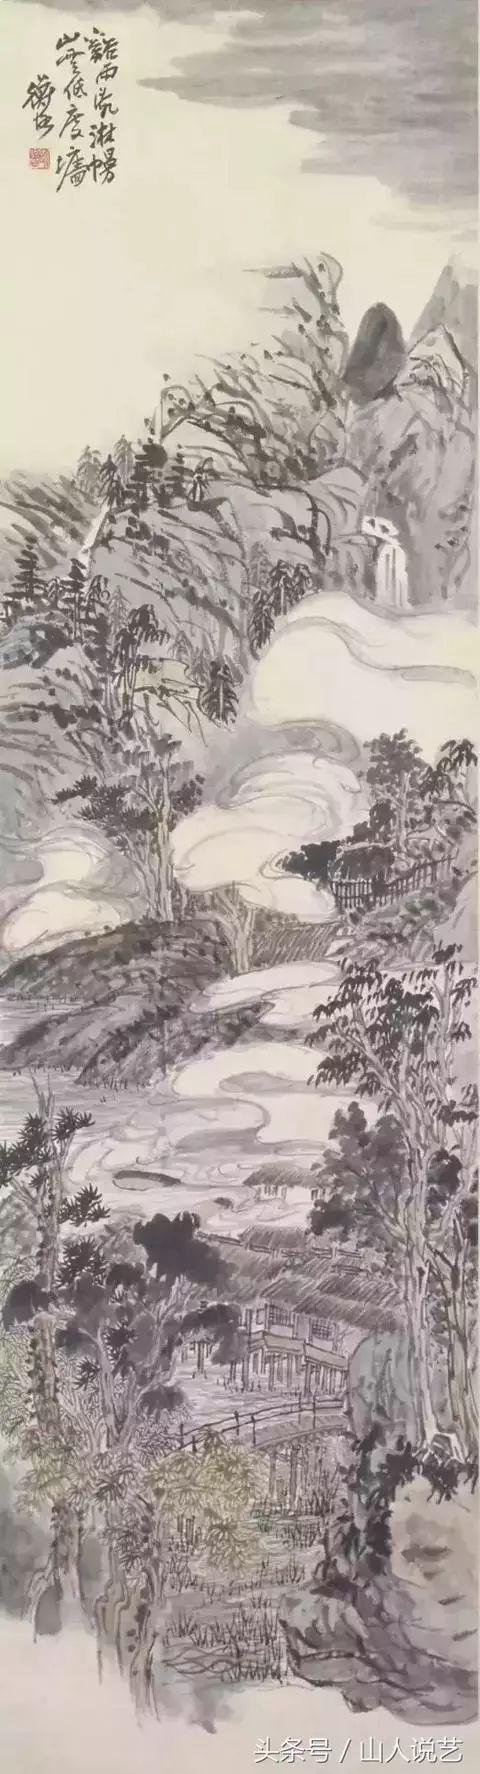 中国美术史上最具代表性的“画派”近现代篇——京津画派